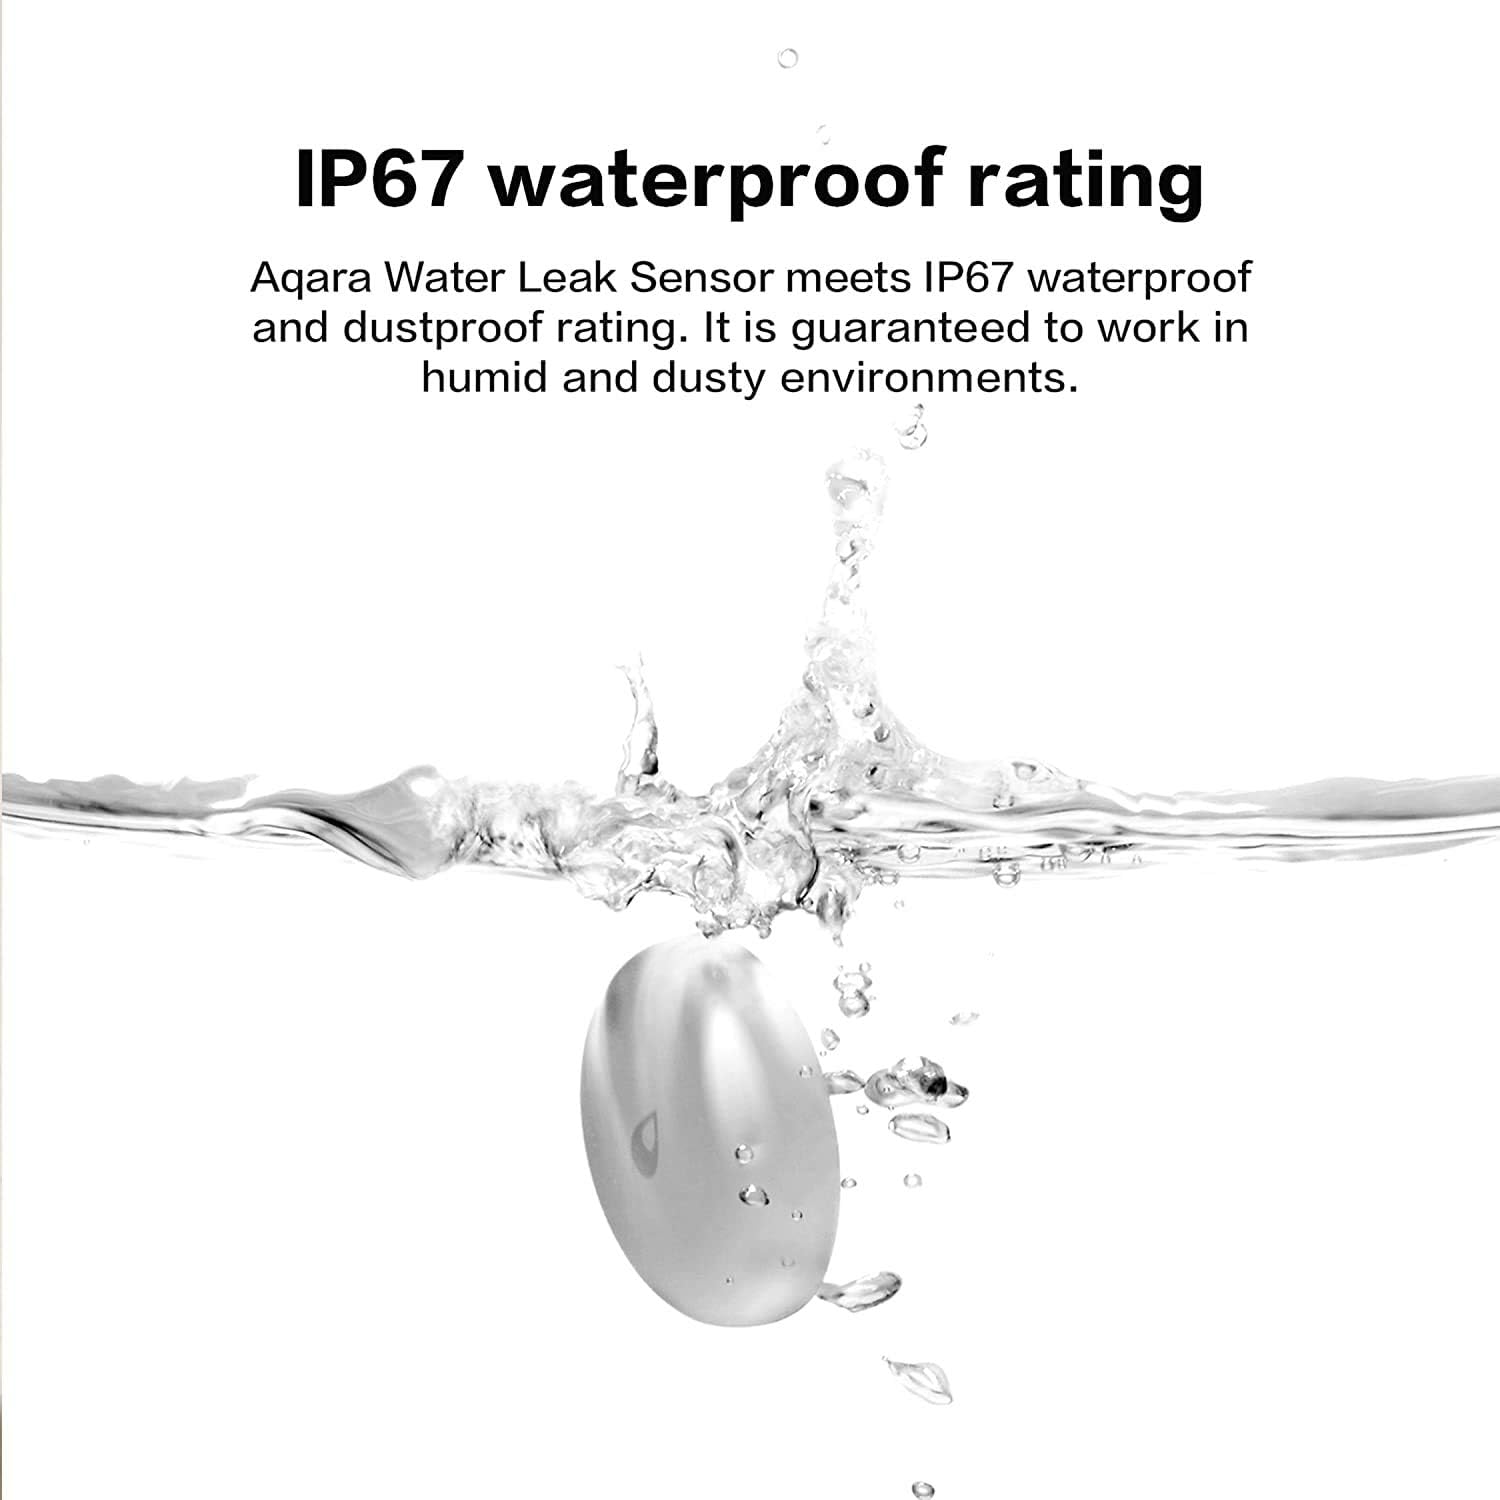 Cảm biến tràn nước Aqara Water Leak Sensor T1 WL-S02D, bản quốc tế, Zigbee 3.0, bản quốc tế, hàng chính hãng